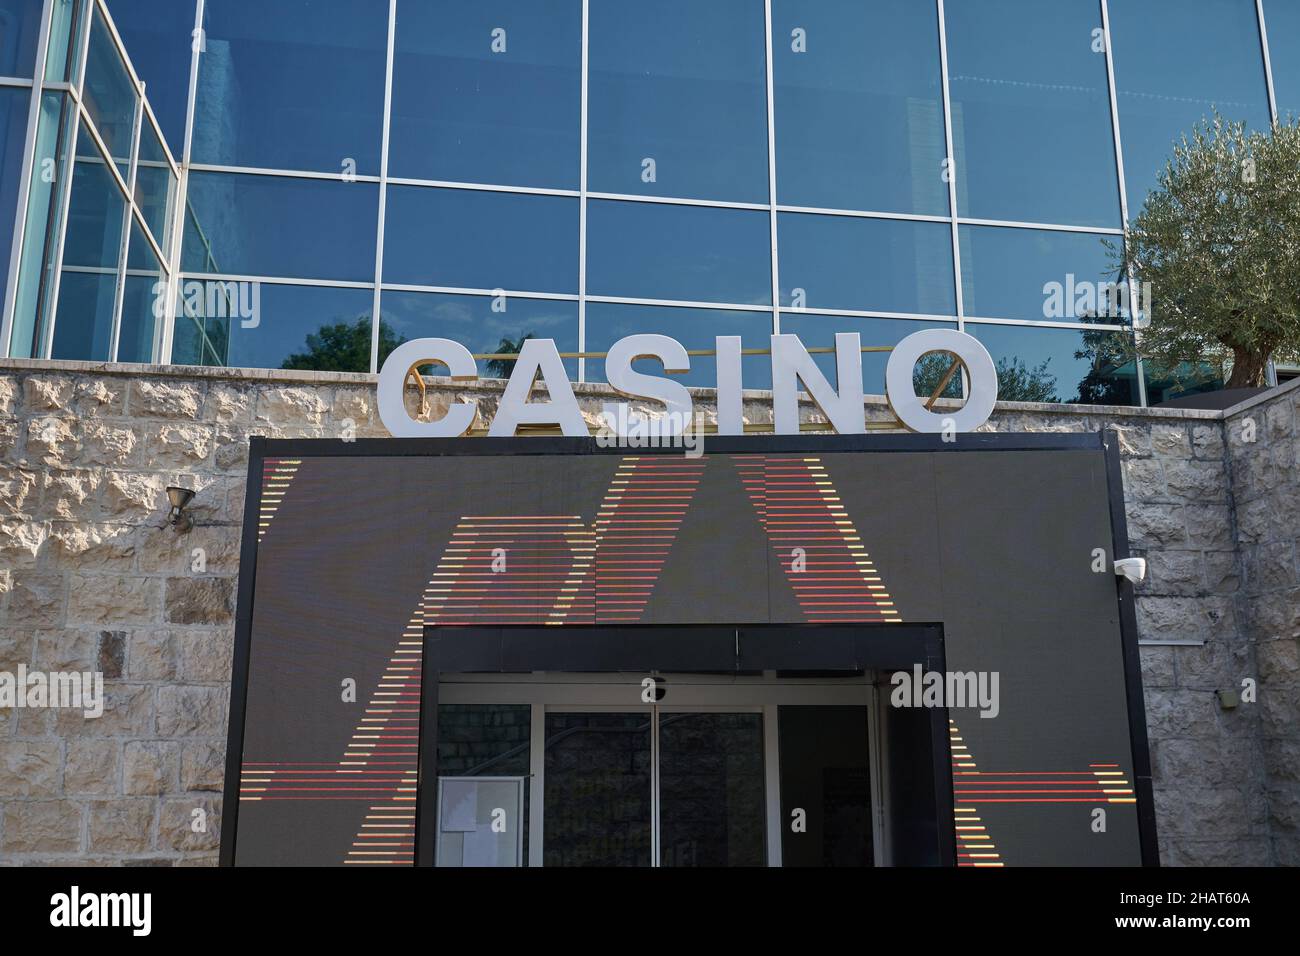 Signe publicitaire du casino sur la façade du bâtiment. Banque D'Images